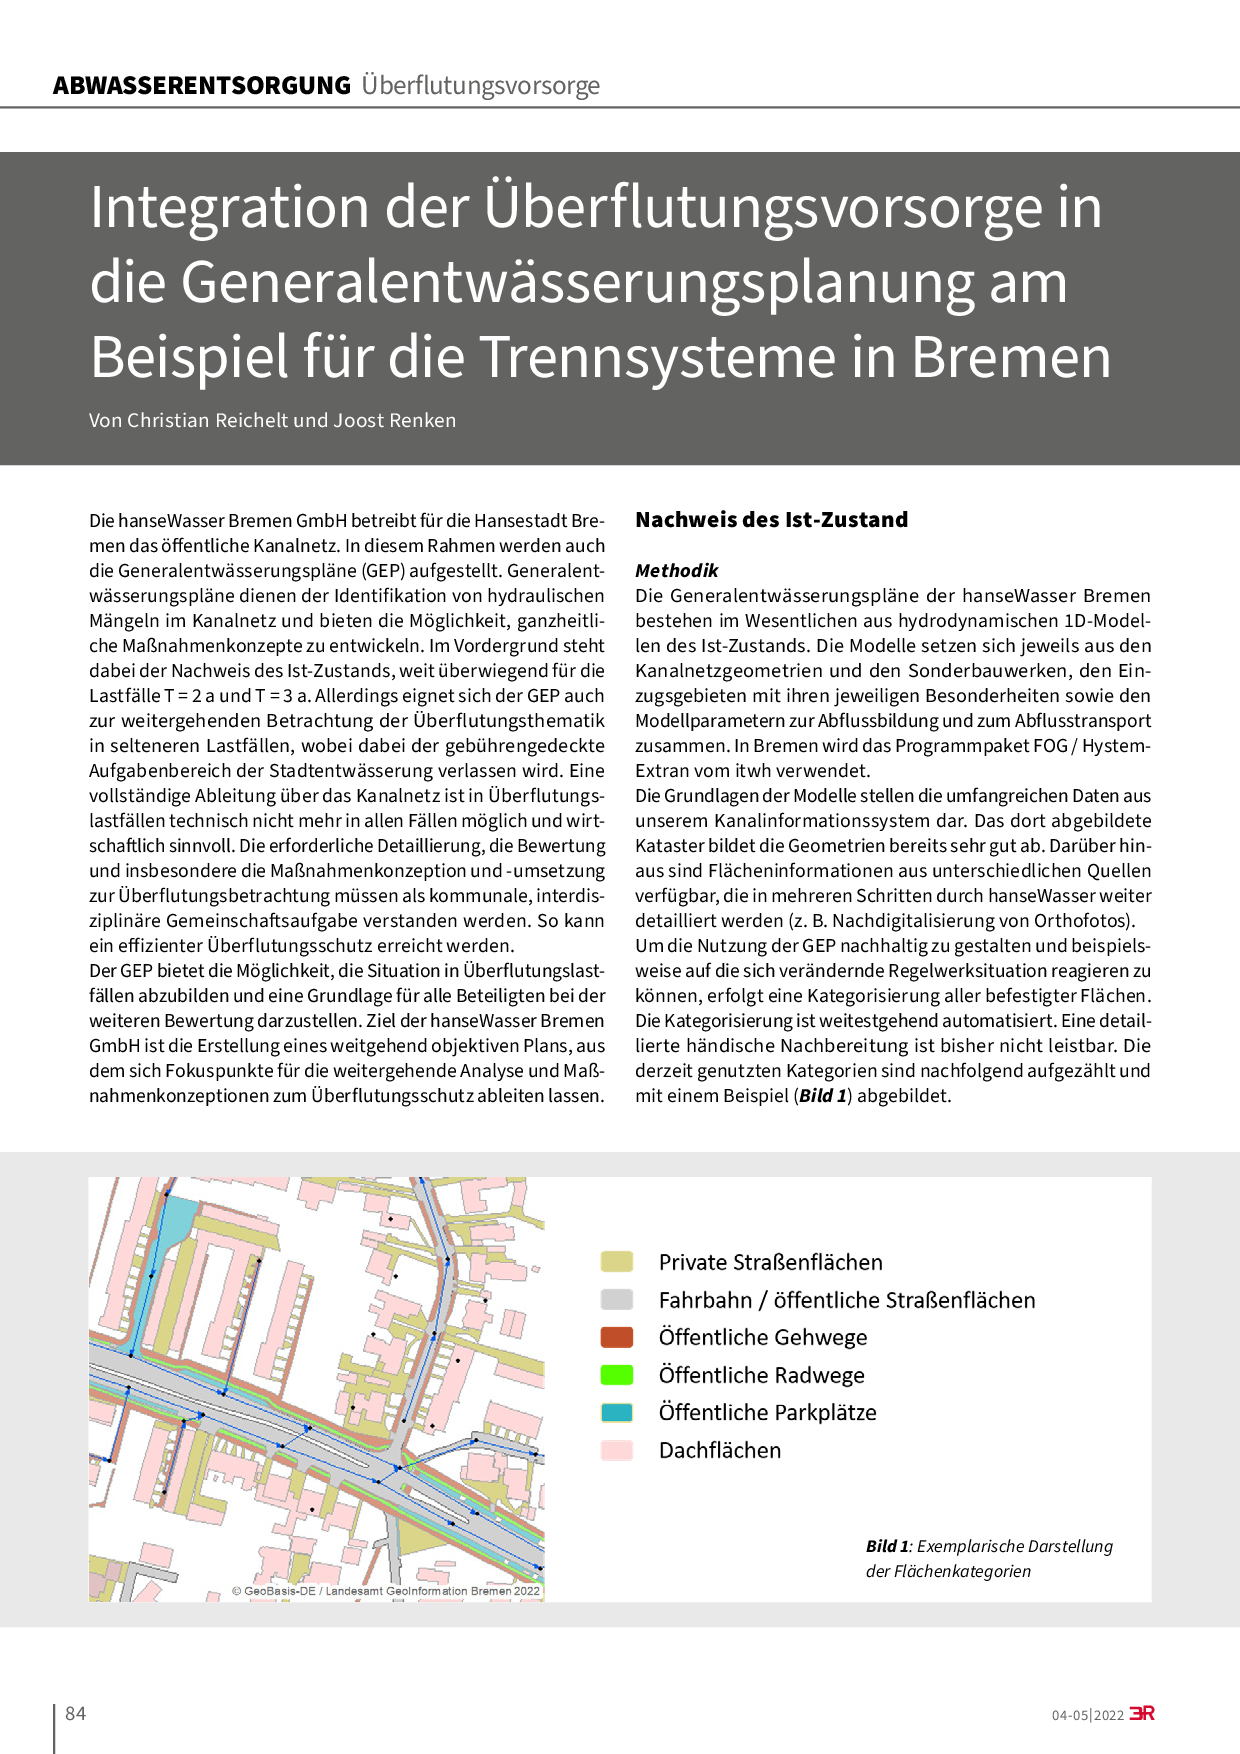 Integration der Überflutungsvorsorge in die Generalentwässerungsplanung am Beispiel für die Trennsysteme in Bremen